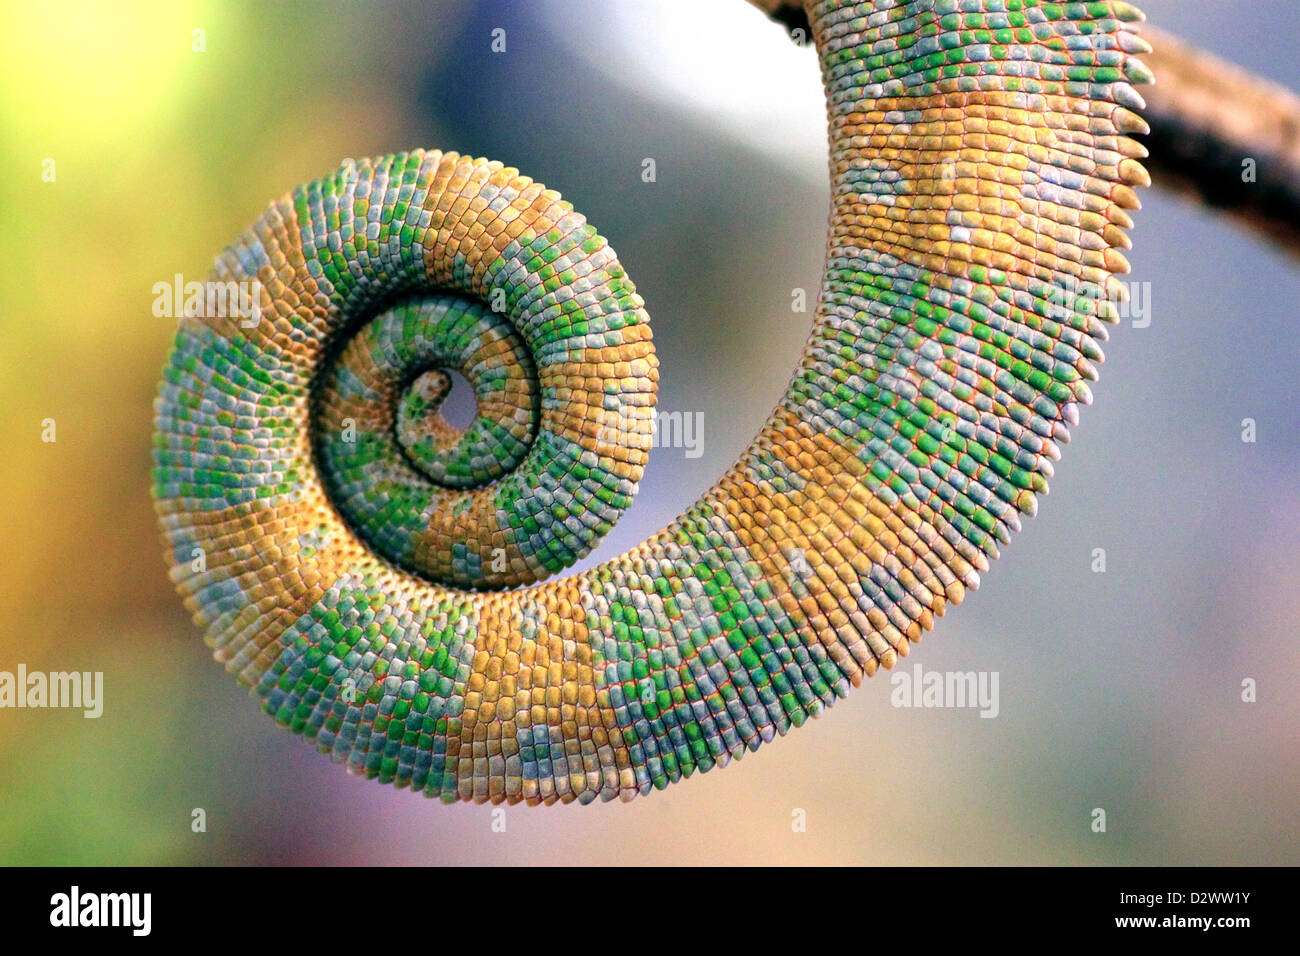 Cola de un camaleón envuelto en una espiral Foto de stock